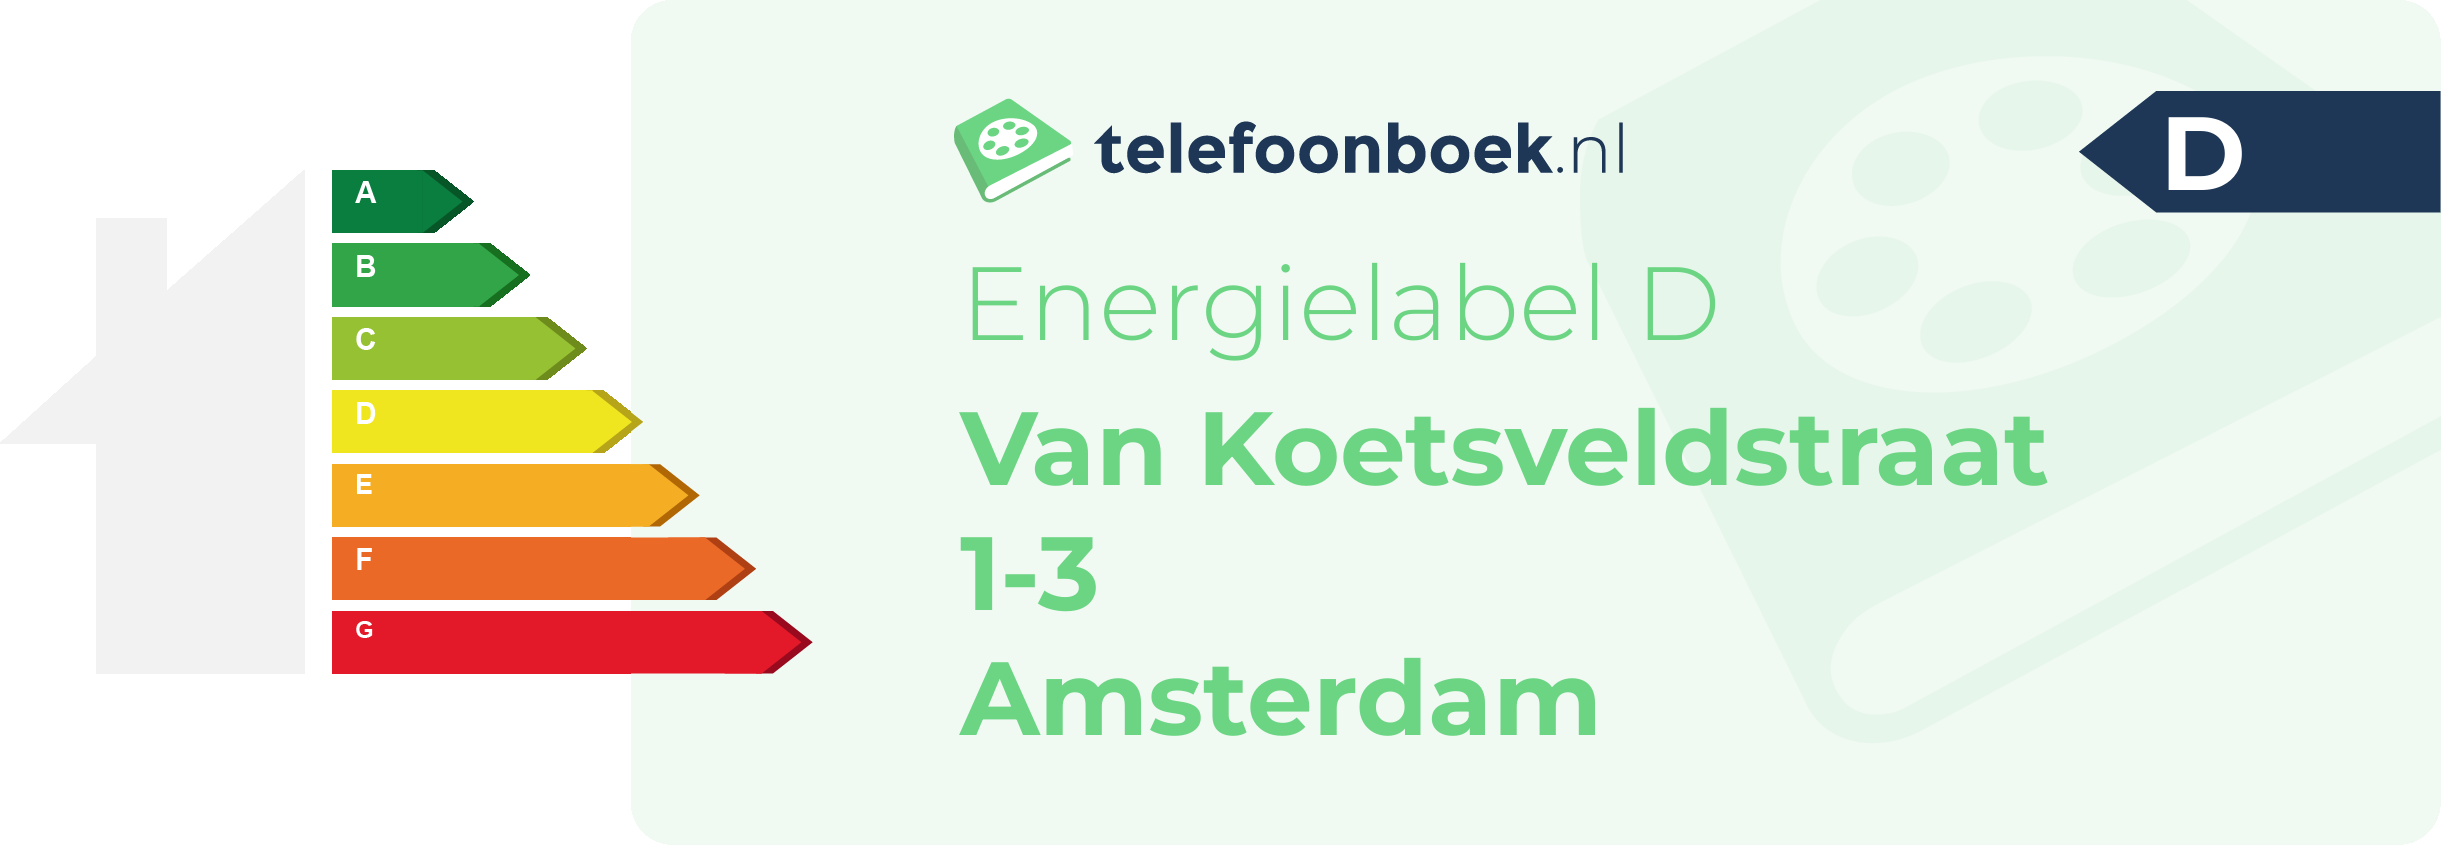 Energielabel Van Koetsveldstraat 1-3 Amsterdam